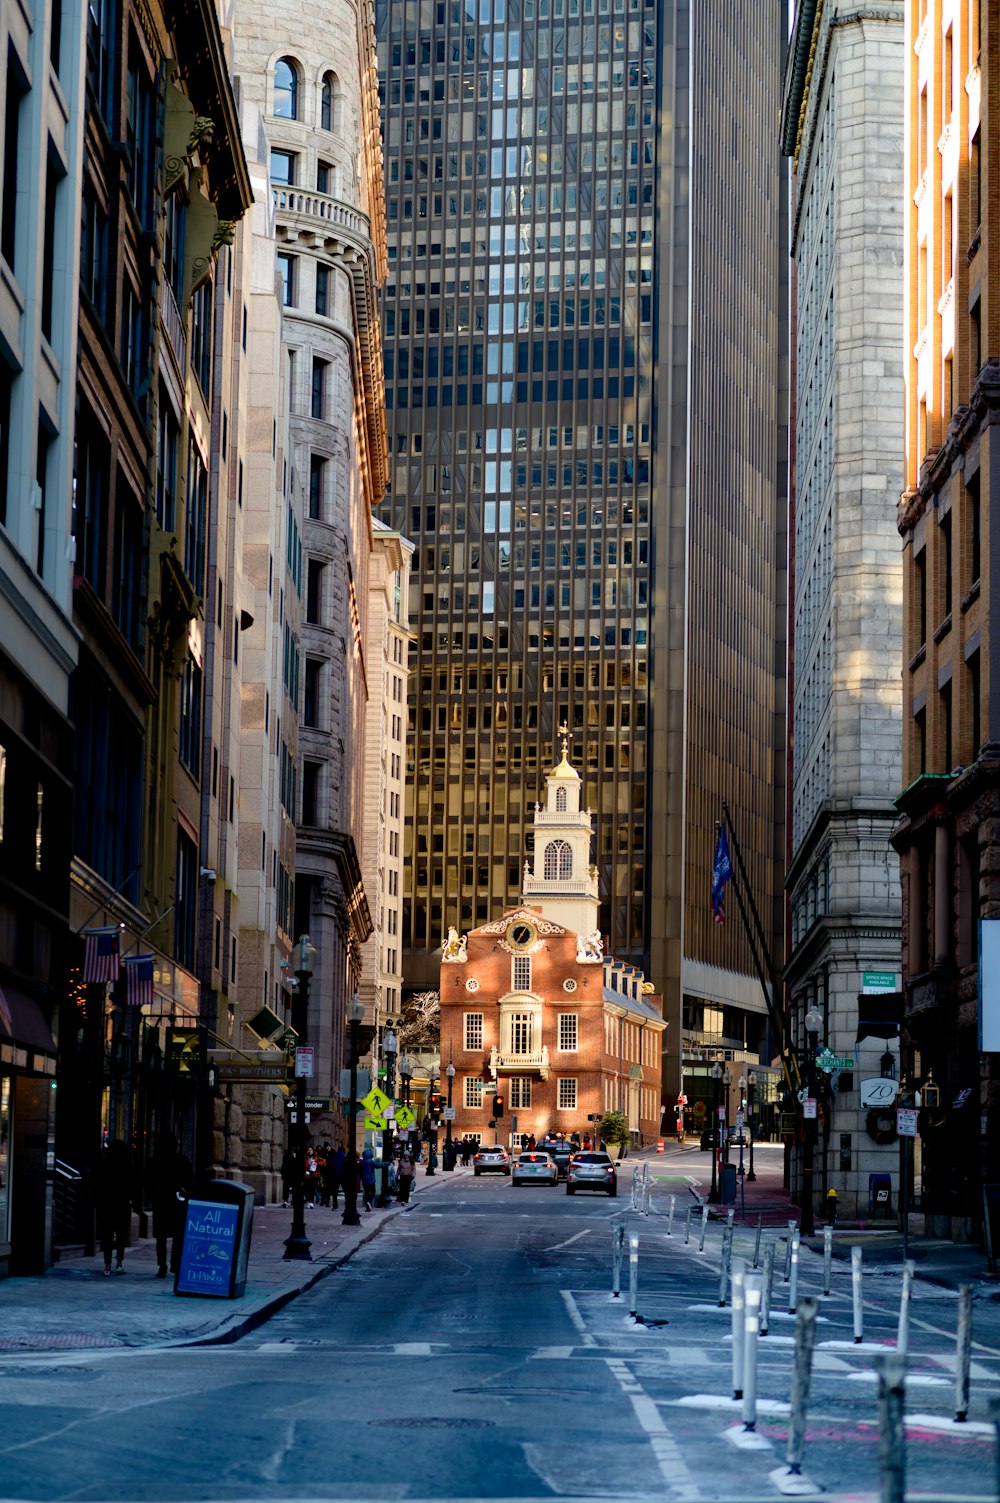 Une rue de la ville avec de grands immeubles et une tour de l’horloge